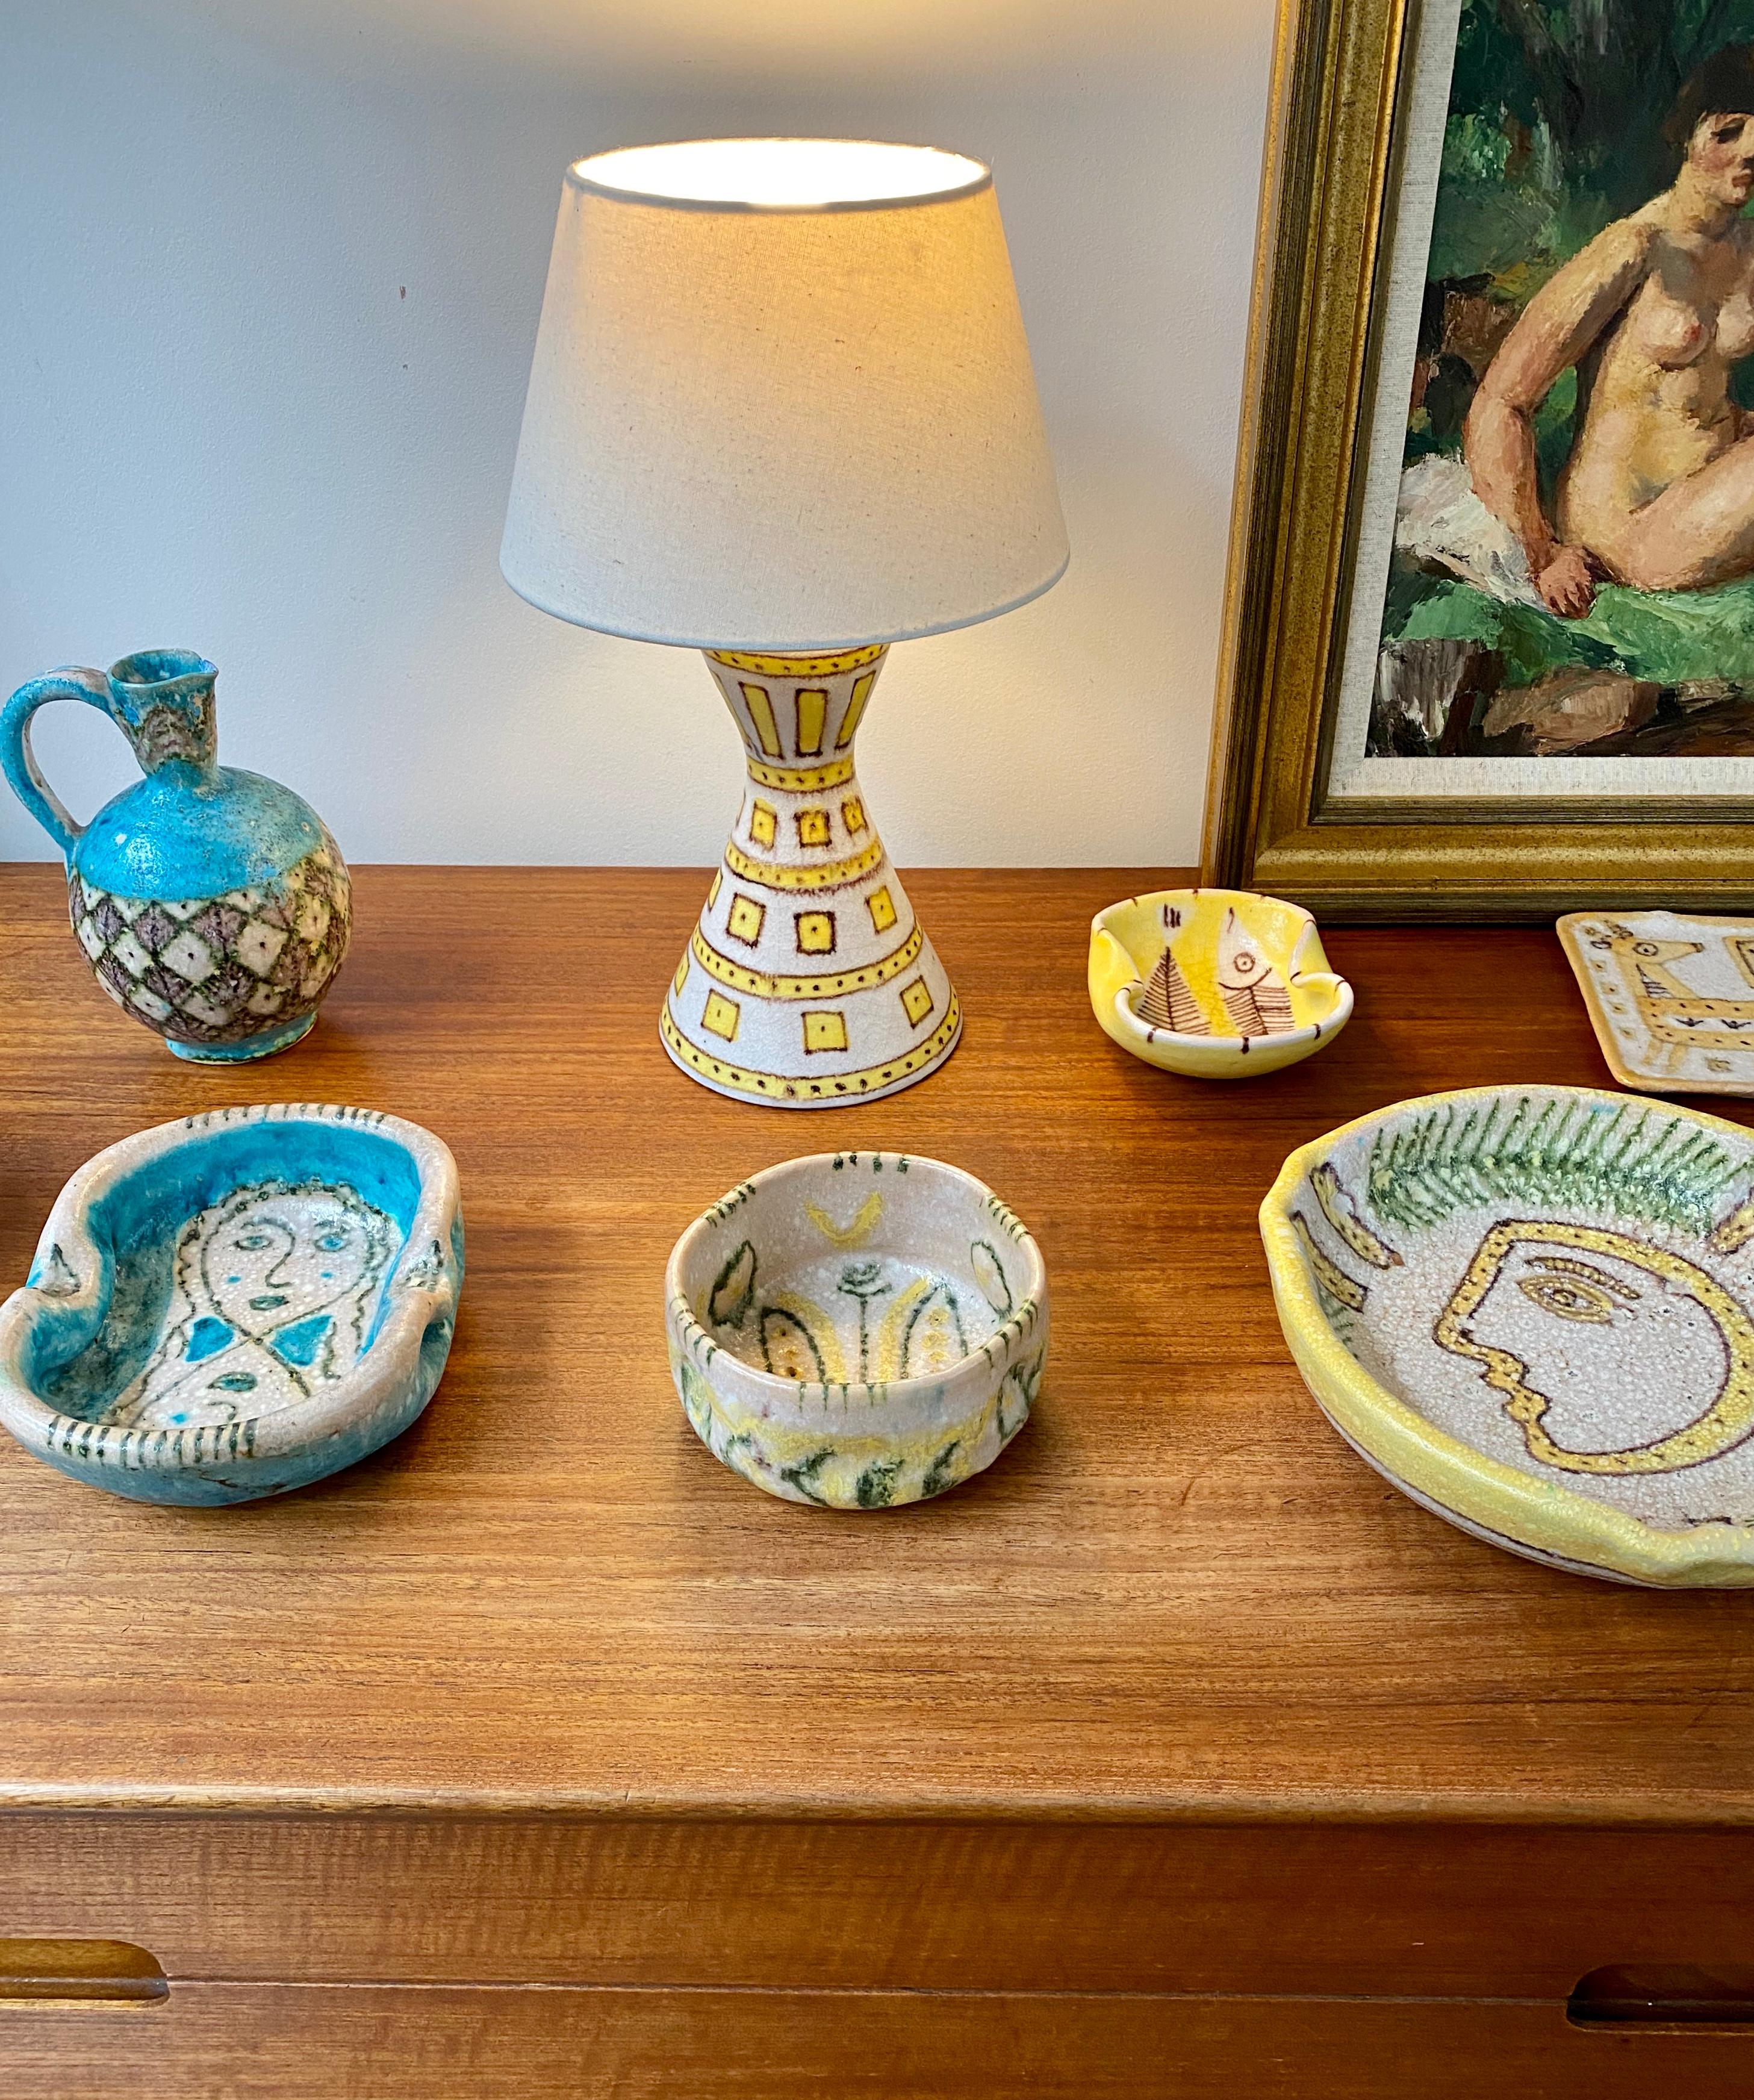 Hand-Painted Italian Midcentury Decorative Ceramic Bowl by Guido Gambone, circa 1950s